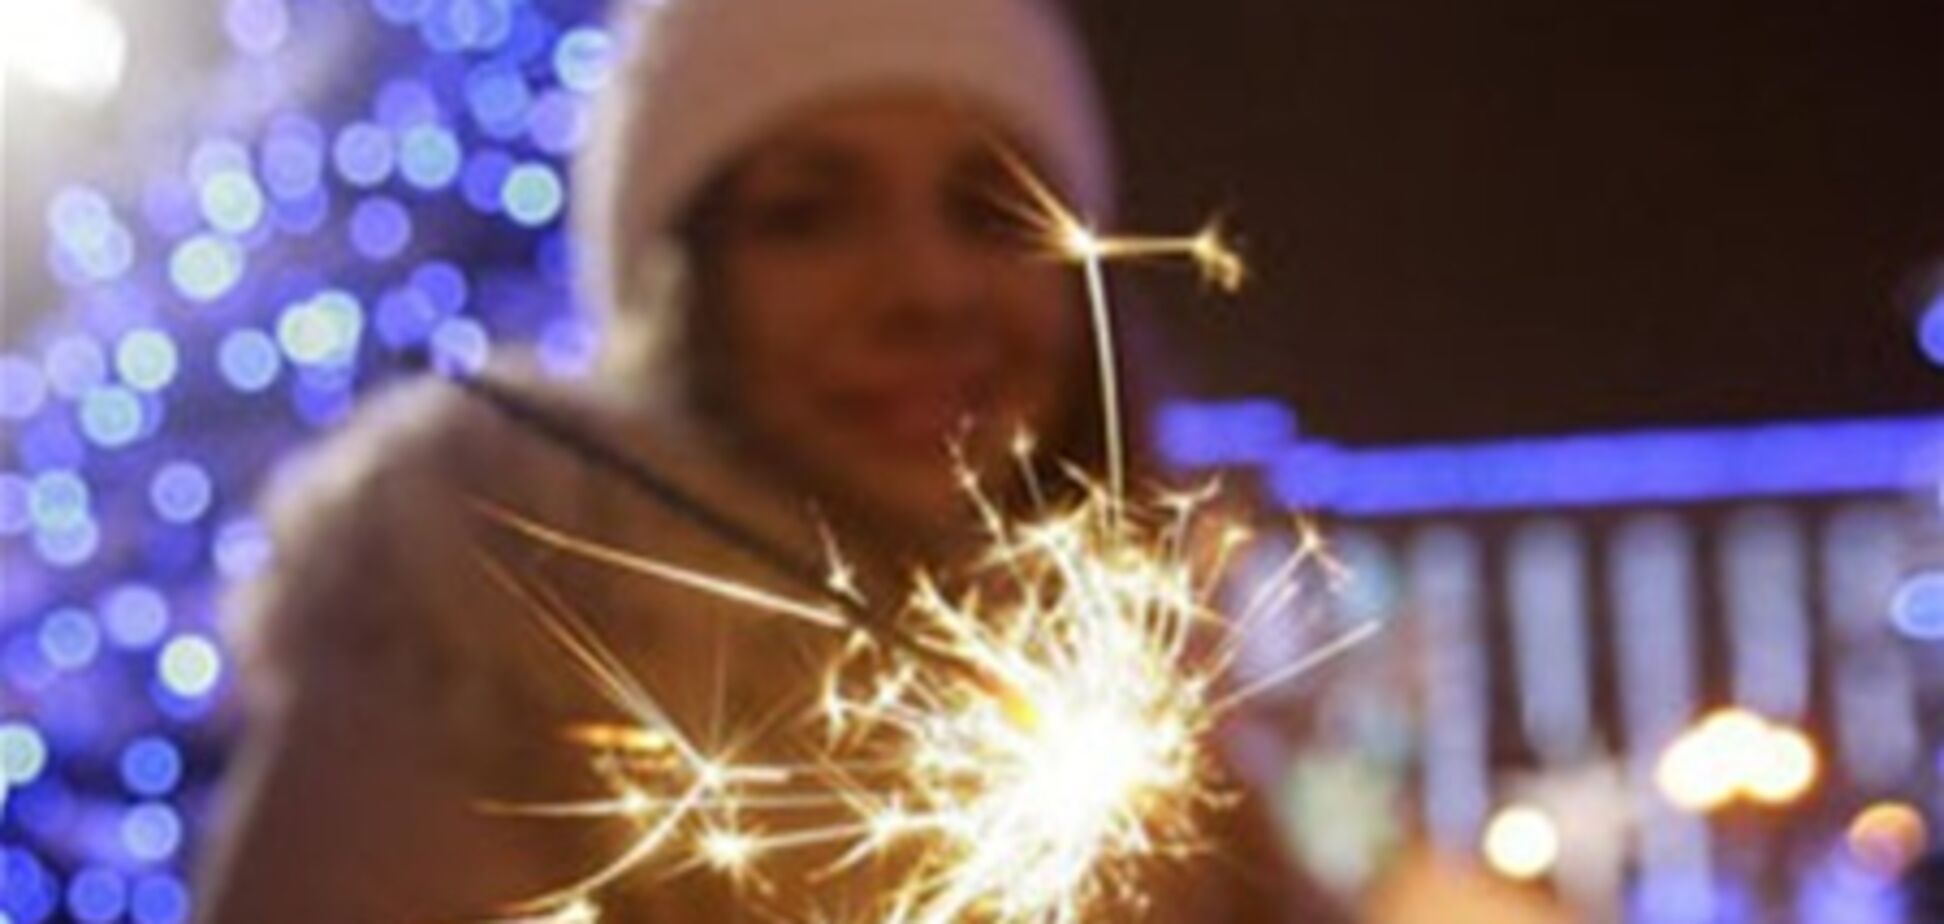 МВС: українці зустріли новий рік спокійно, без грубих правопорушень